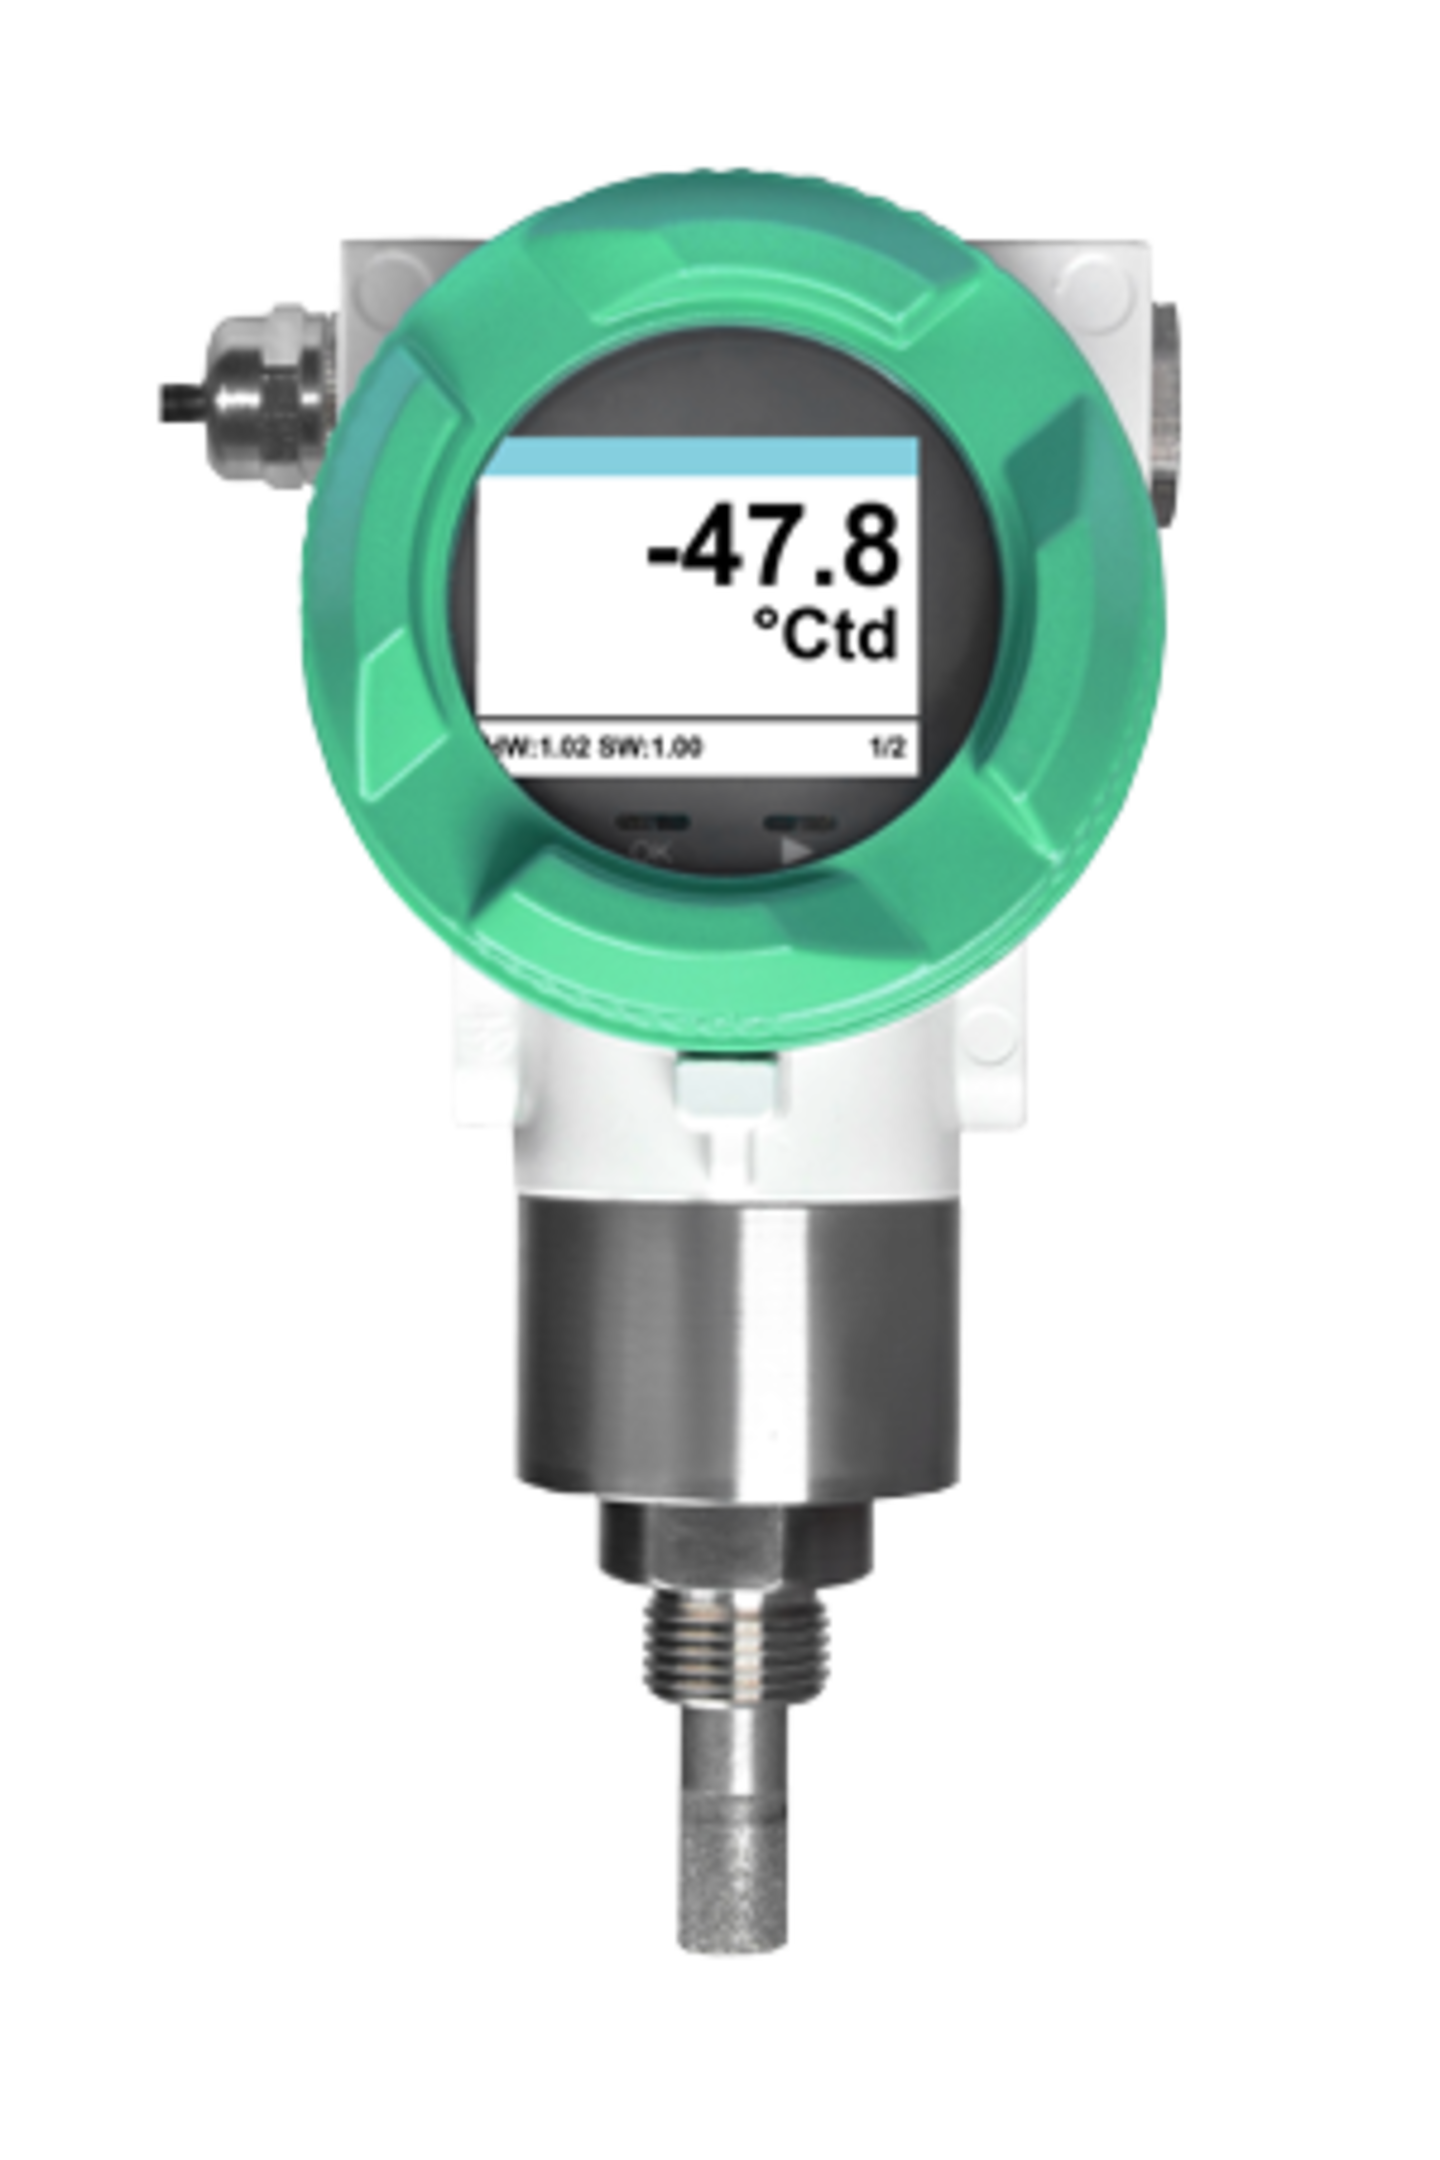 FA 550 - senzor rosného bodu pro systémy stlačeného vzduchu a jiných plynů vhodný pro práci v náročných průmyslových podmínkách